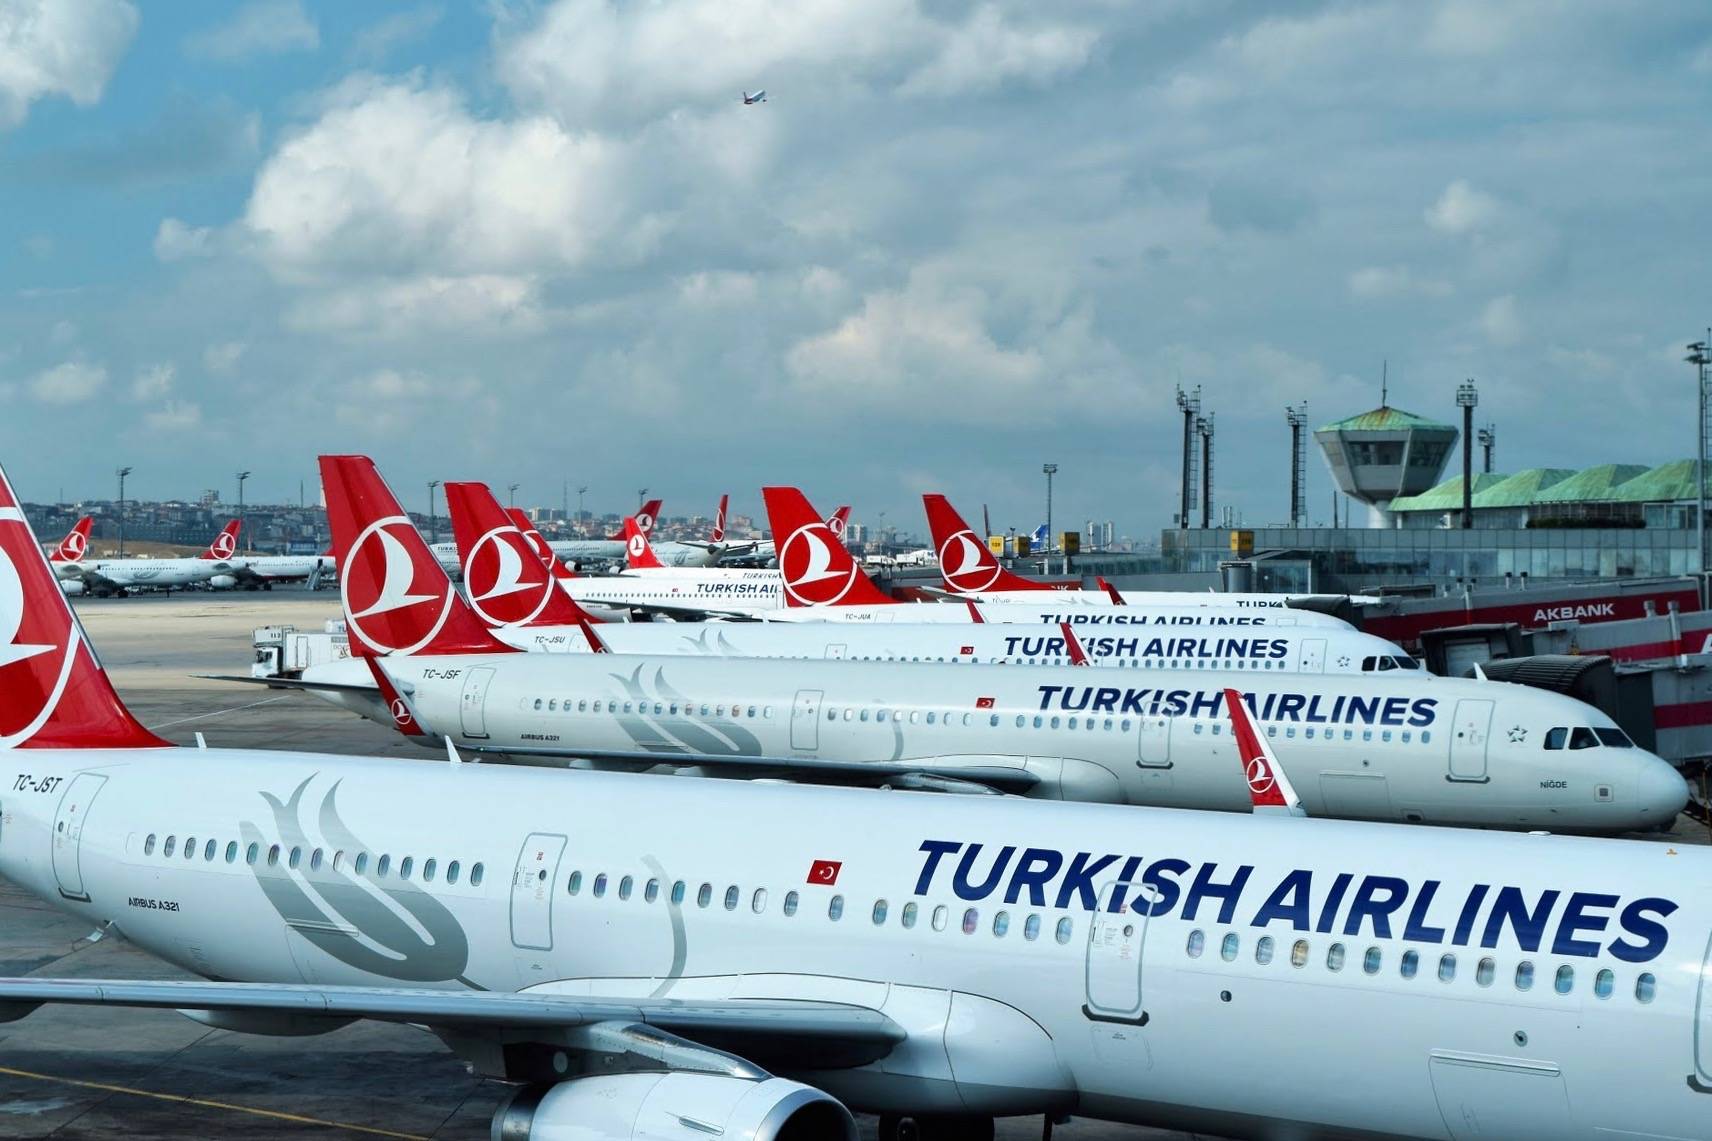 Turkish airline - turkishairlines.com.ru